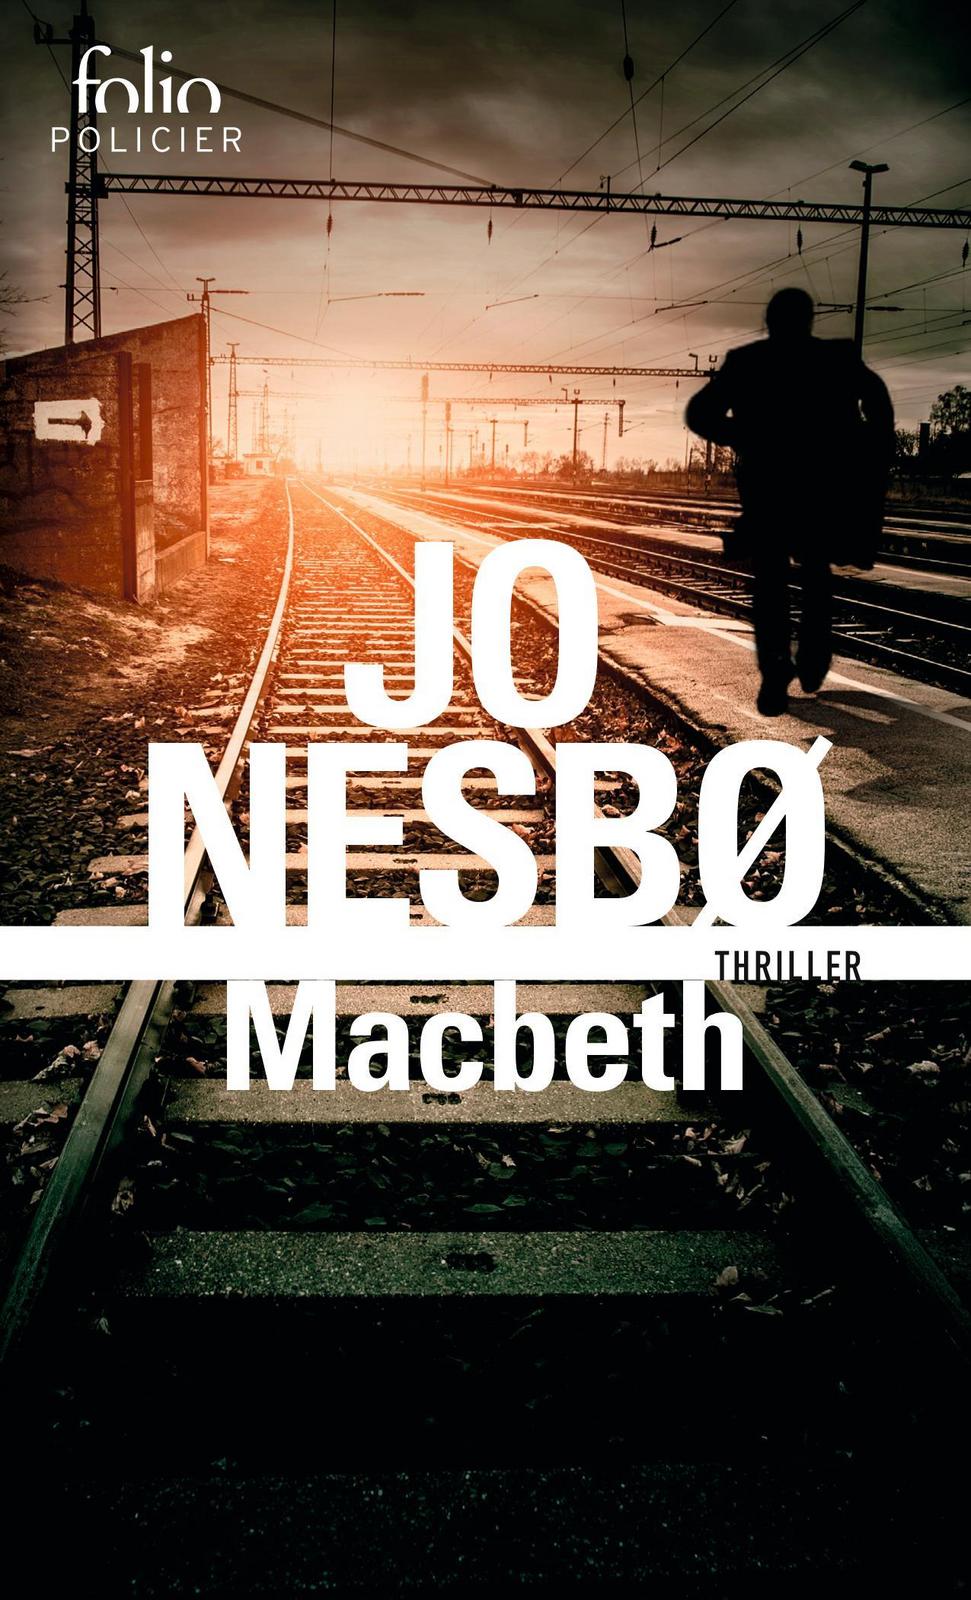 Jo Nesbø: Macbeth (French language, 2020)